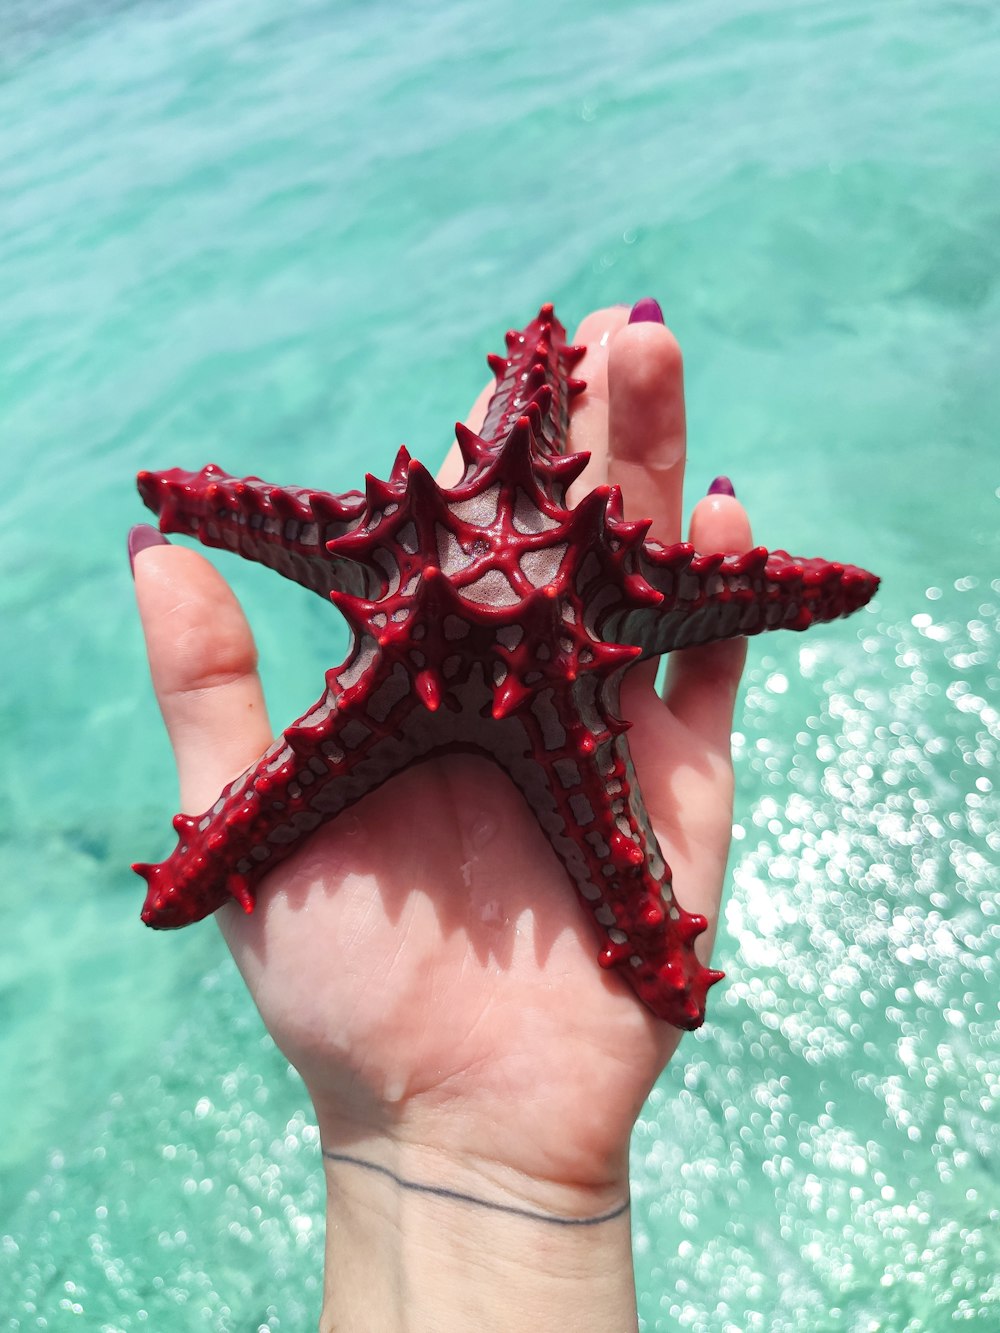 Persona sosteniendo una estrella de mar roja durante el día